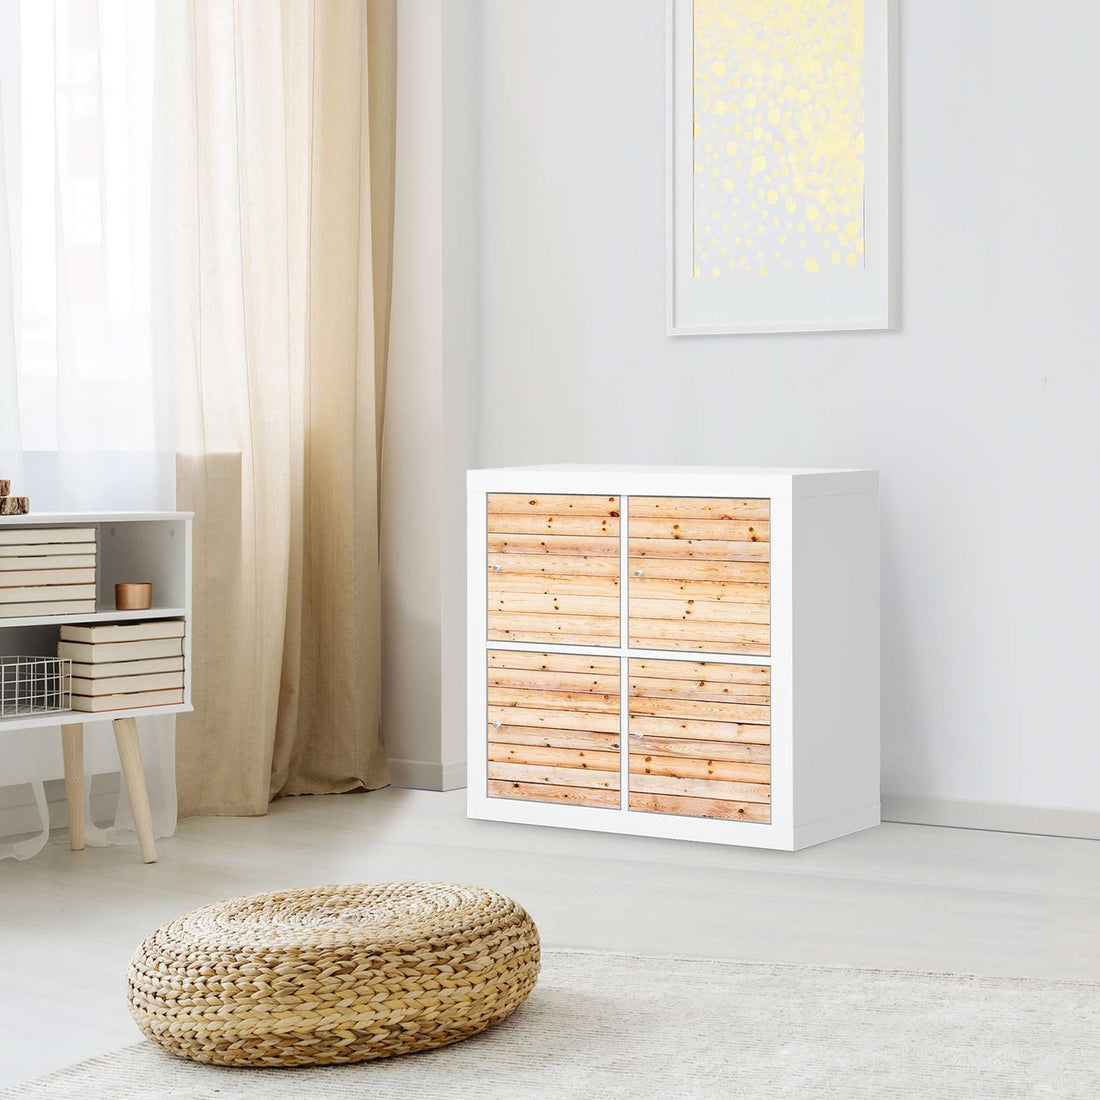 Klebefolie für Möbel Bright Planks - IKEA Kallax Regal 4 Türen - Wohnzimmer